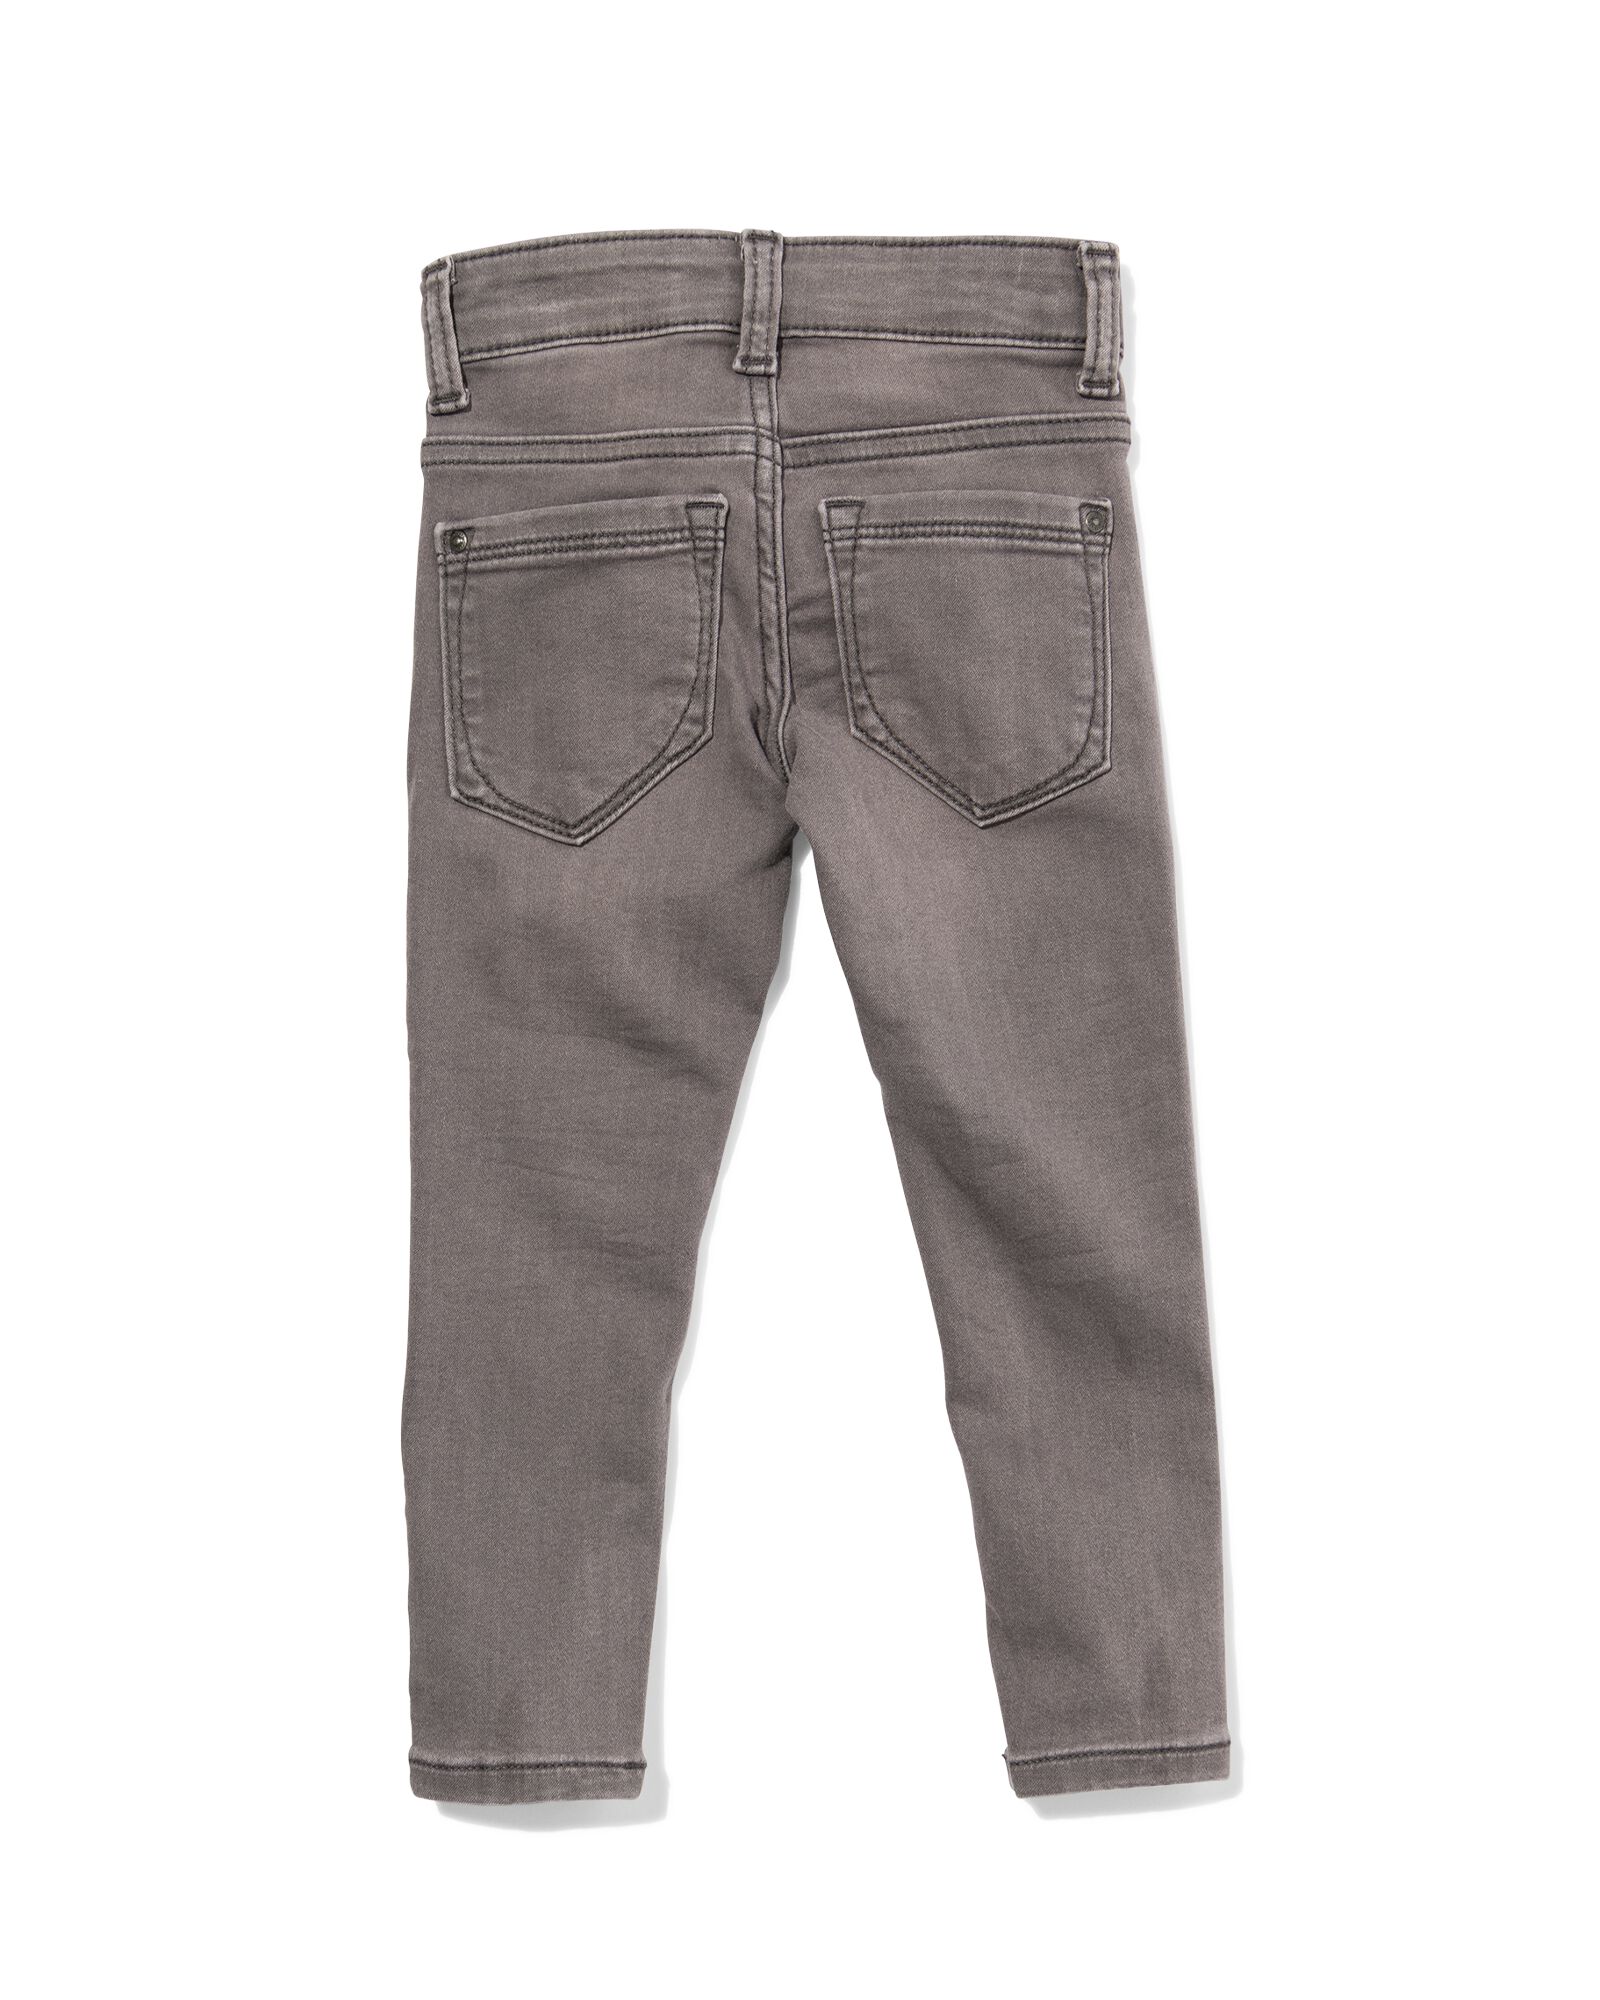 kinder jeans skinny fit grijs 122 - 30874876 - HEMA